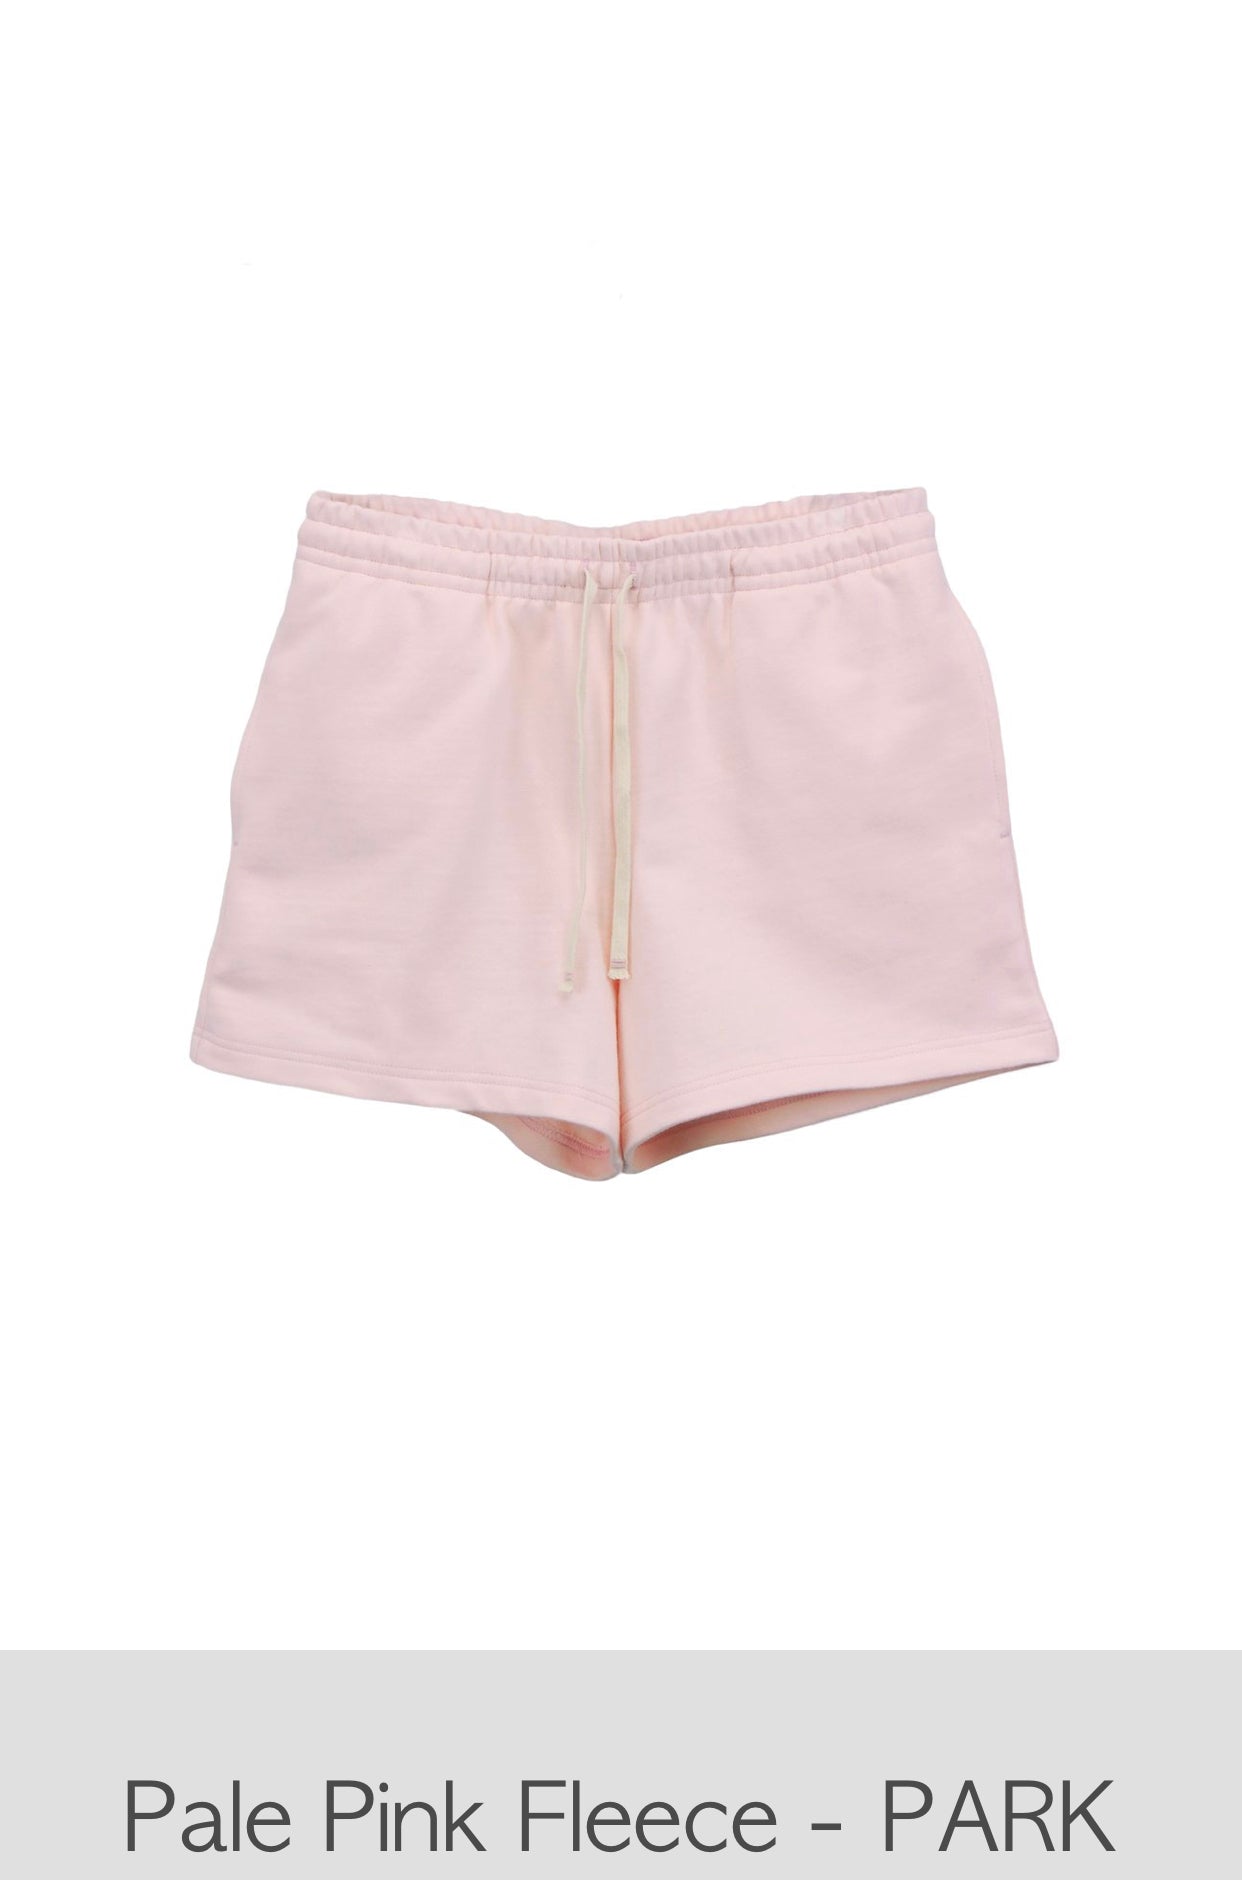 Pale Pink Short - PARK Mini SHORT